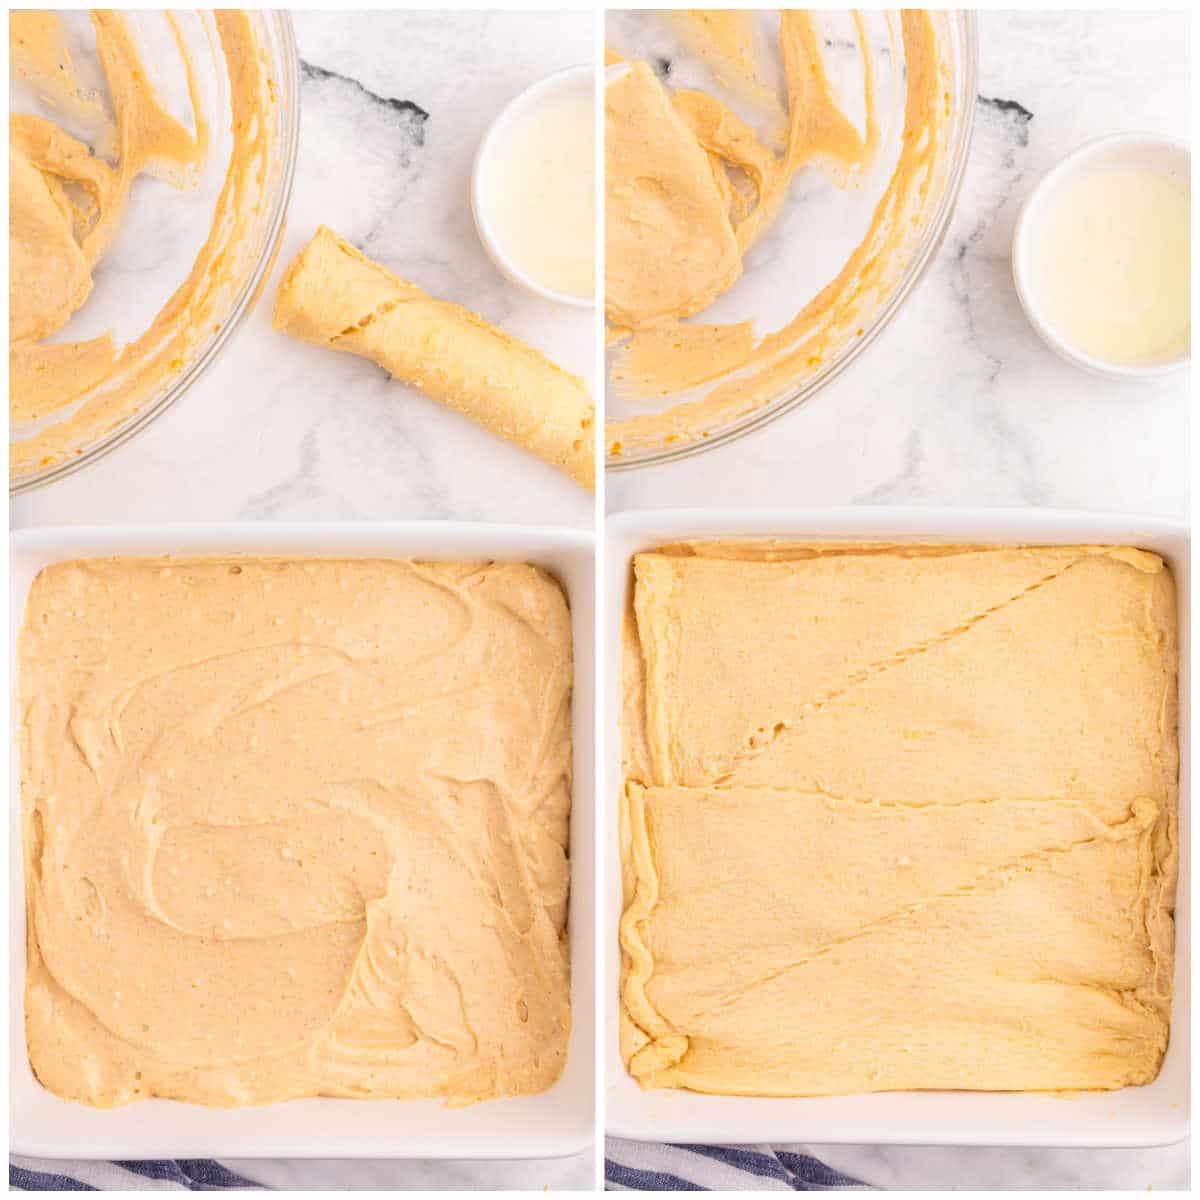 Steps to make pumpkin cream cheese danish bake.